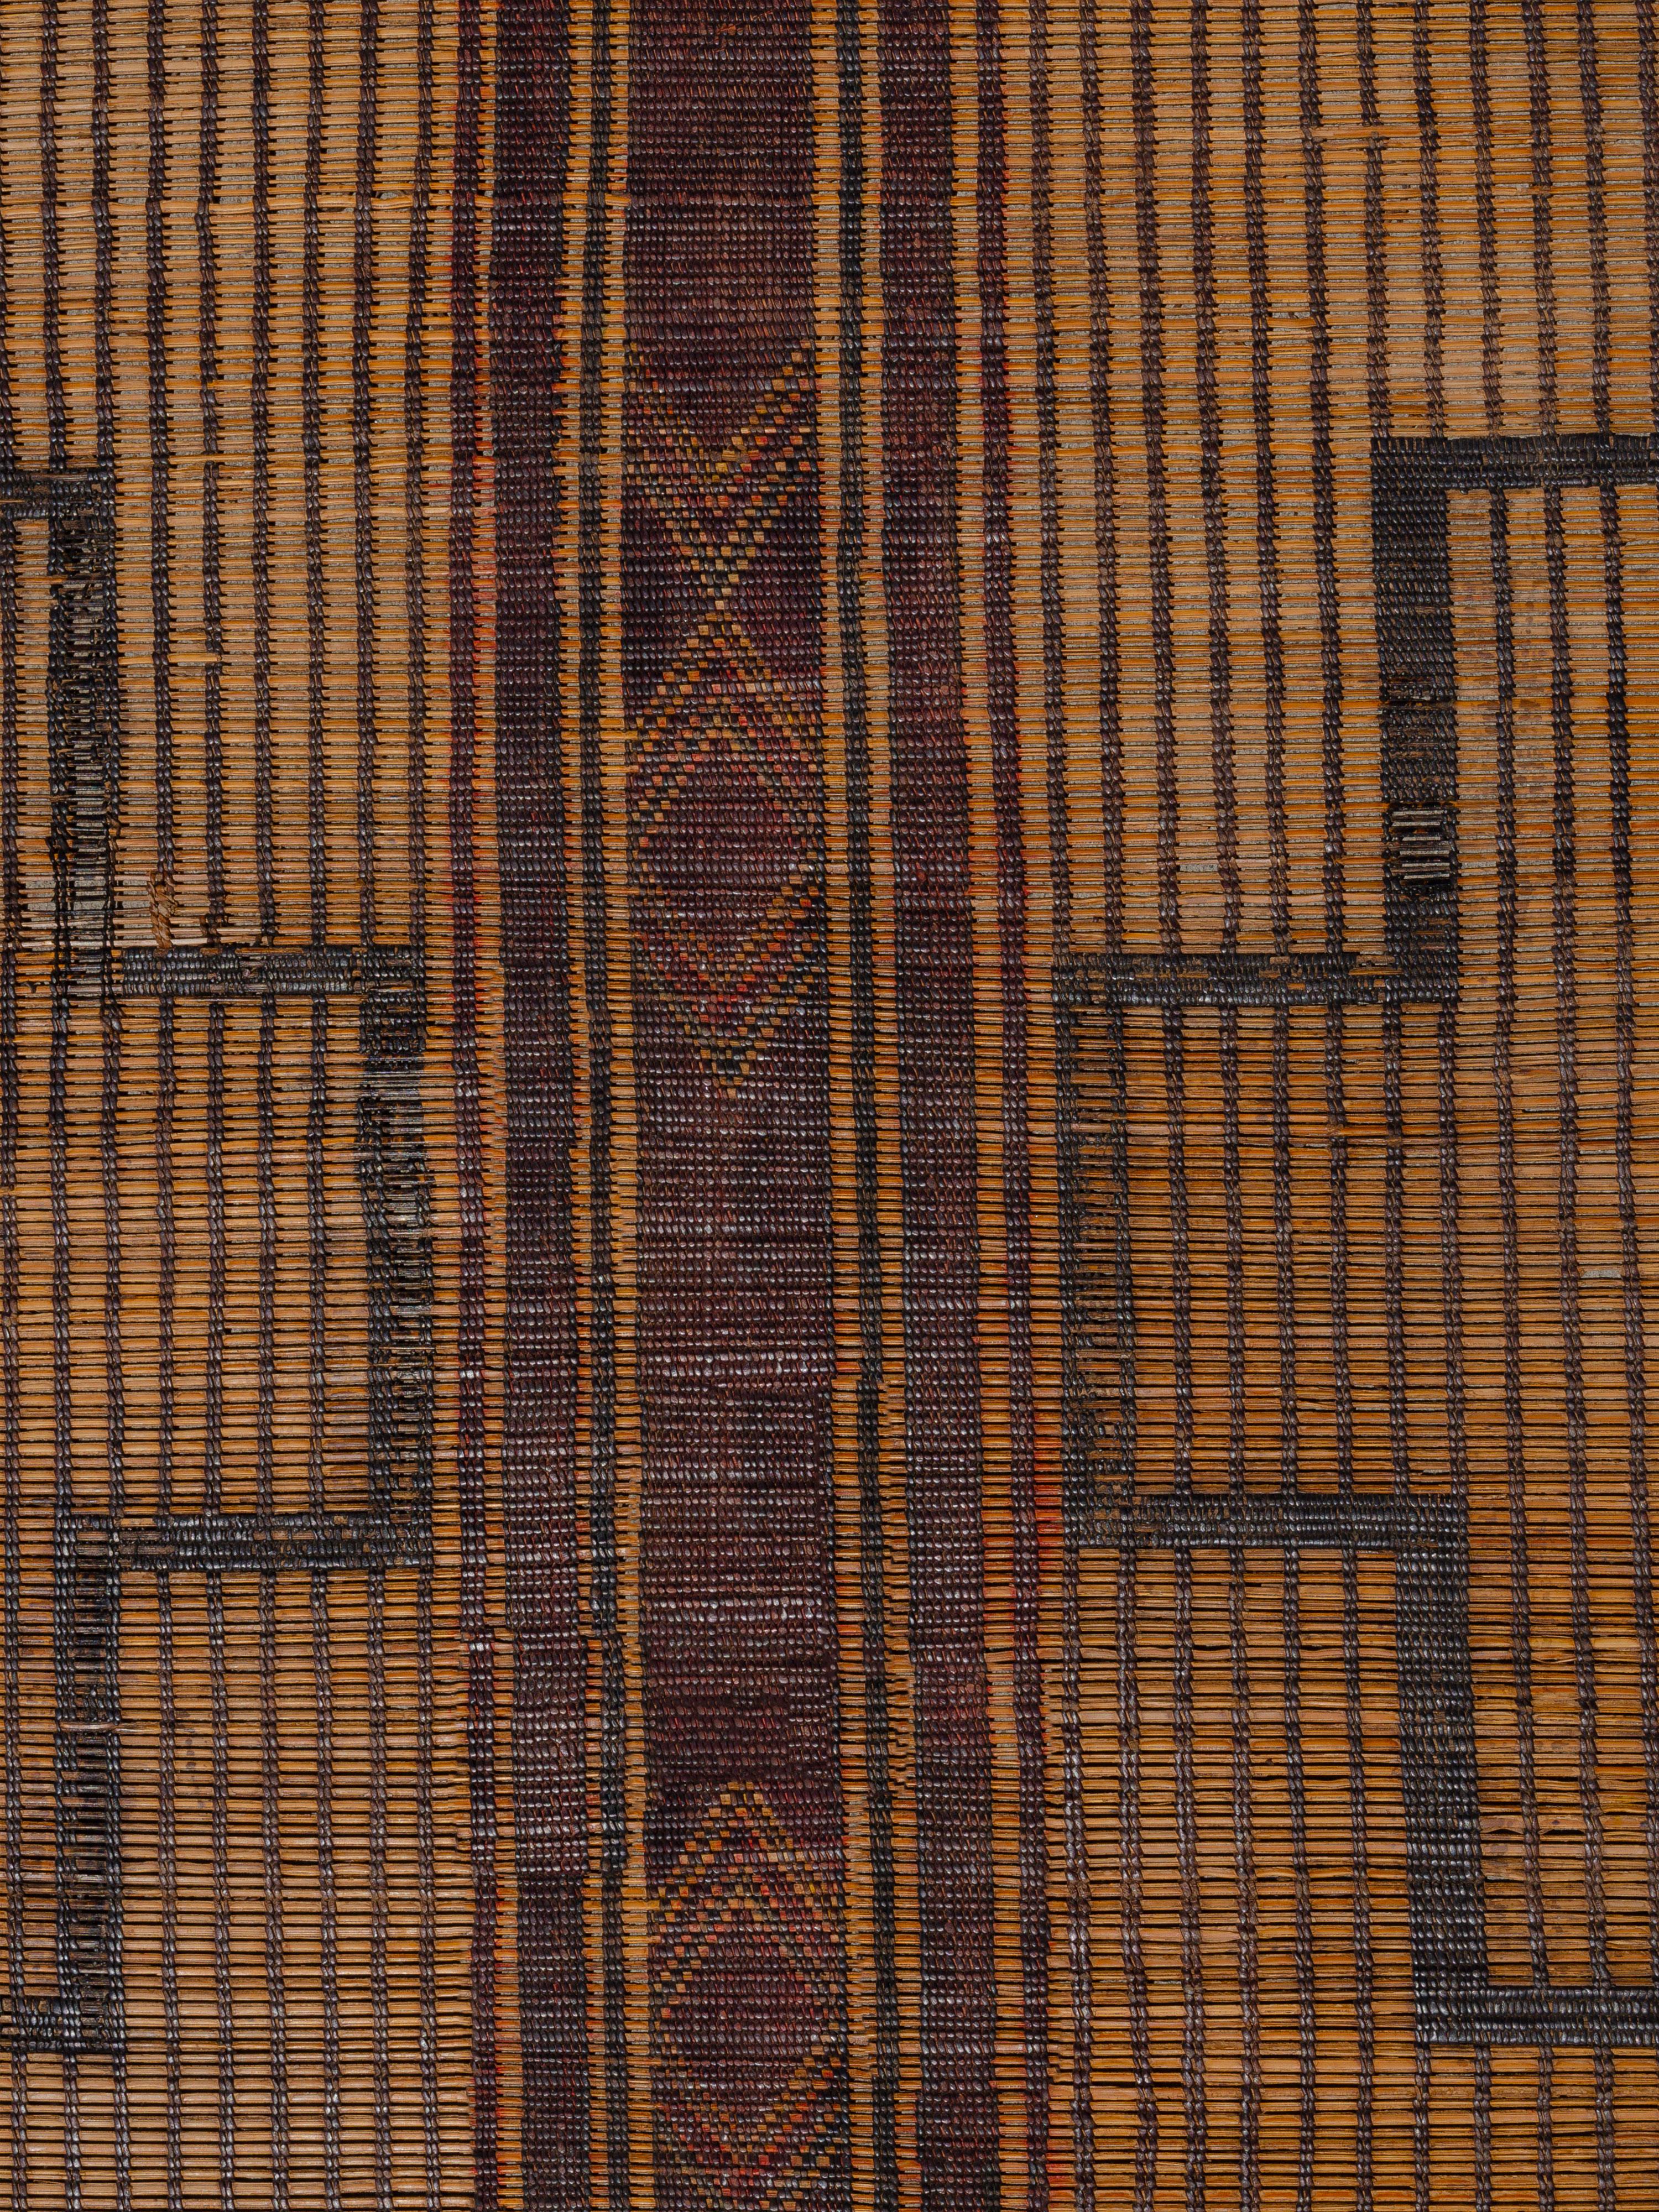 Tissés par les tribus nomades touaregs de Mauritanie avec du roseau de palmier et du cuir, ces tapis offrent une alternative texturale aux revêtements de sol traditionnels en textile tissé. Cette pièce présente une composition plutôt symétrique de